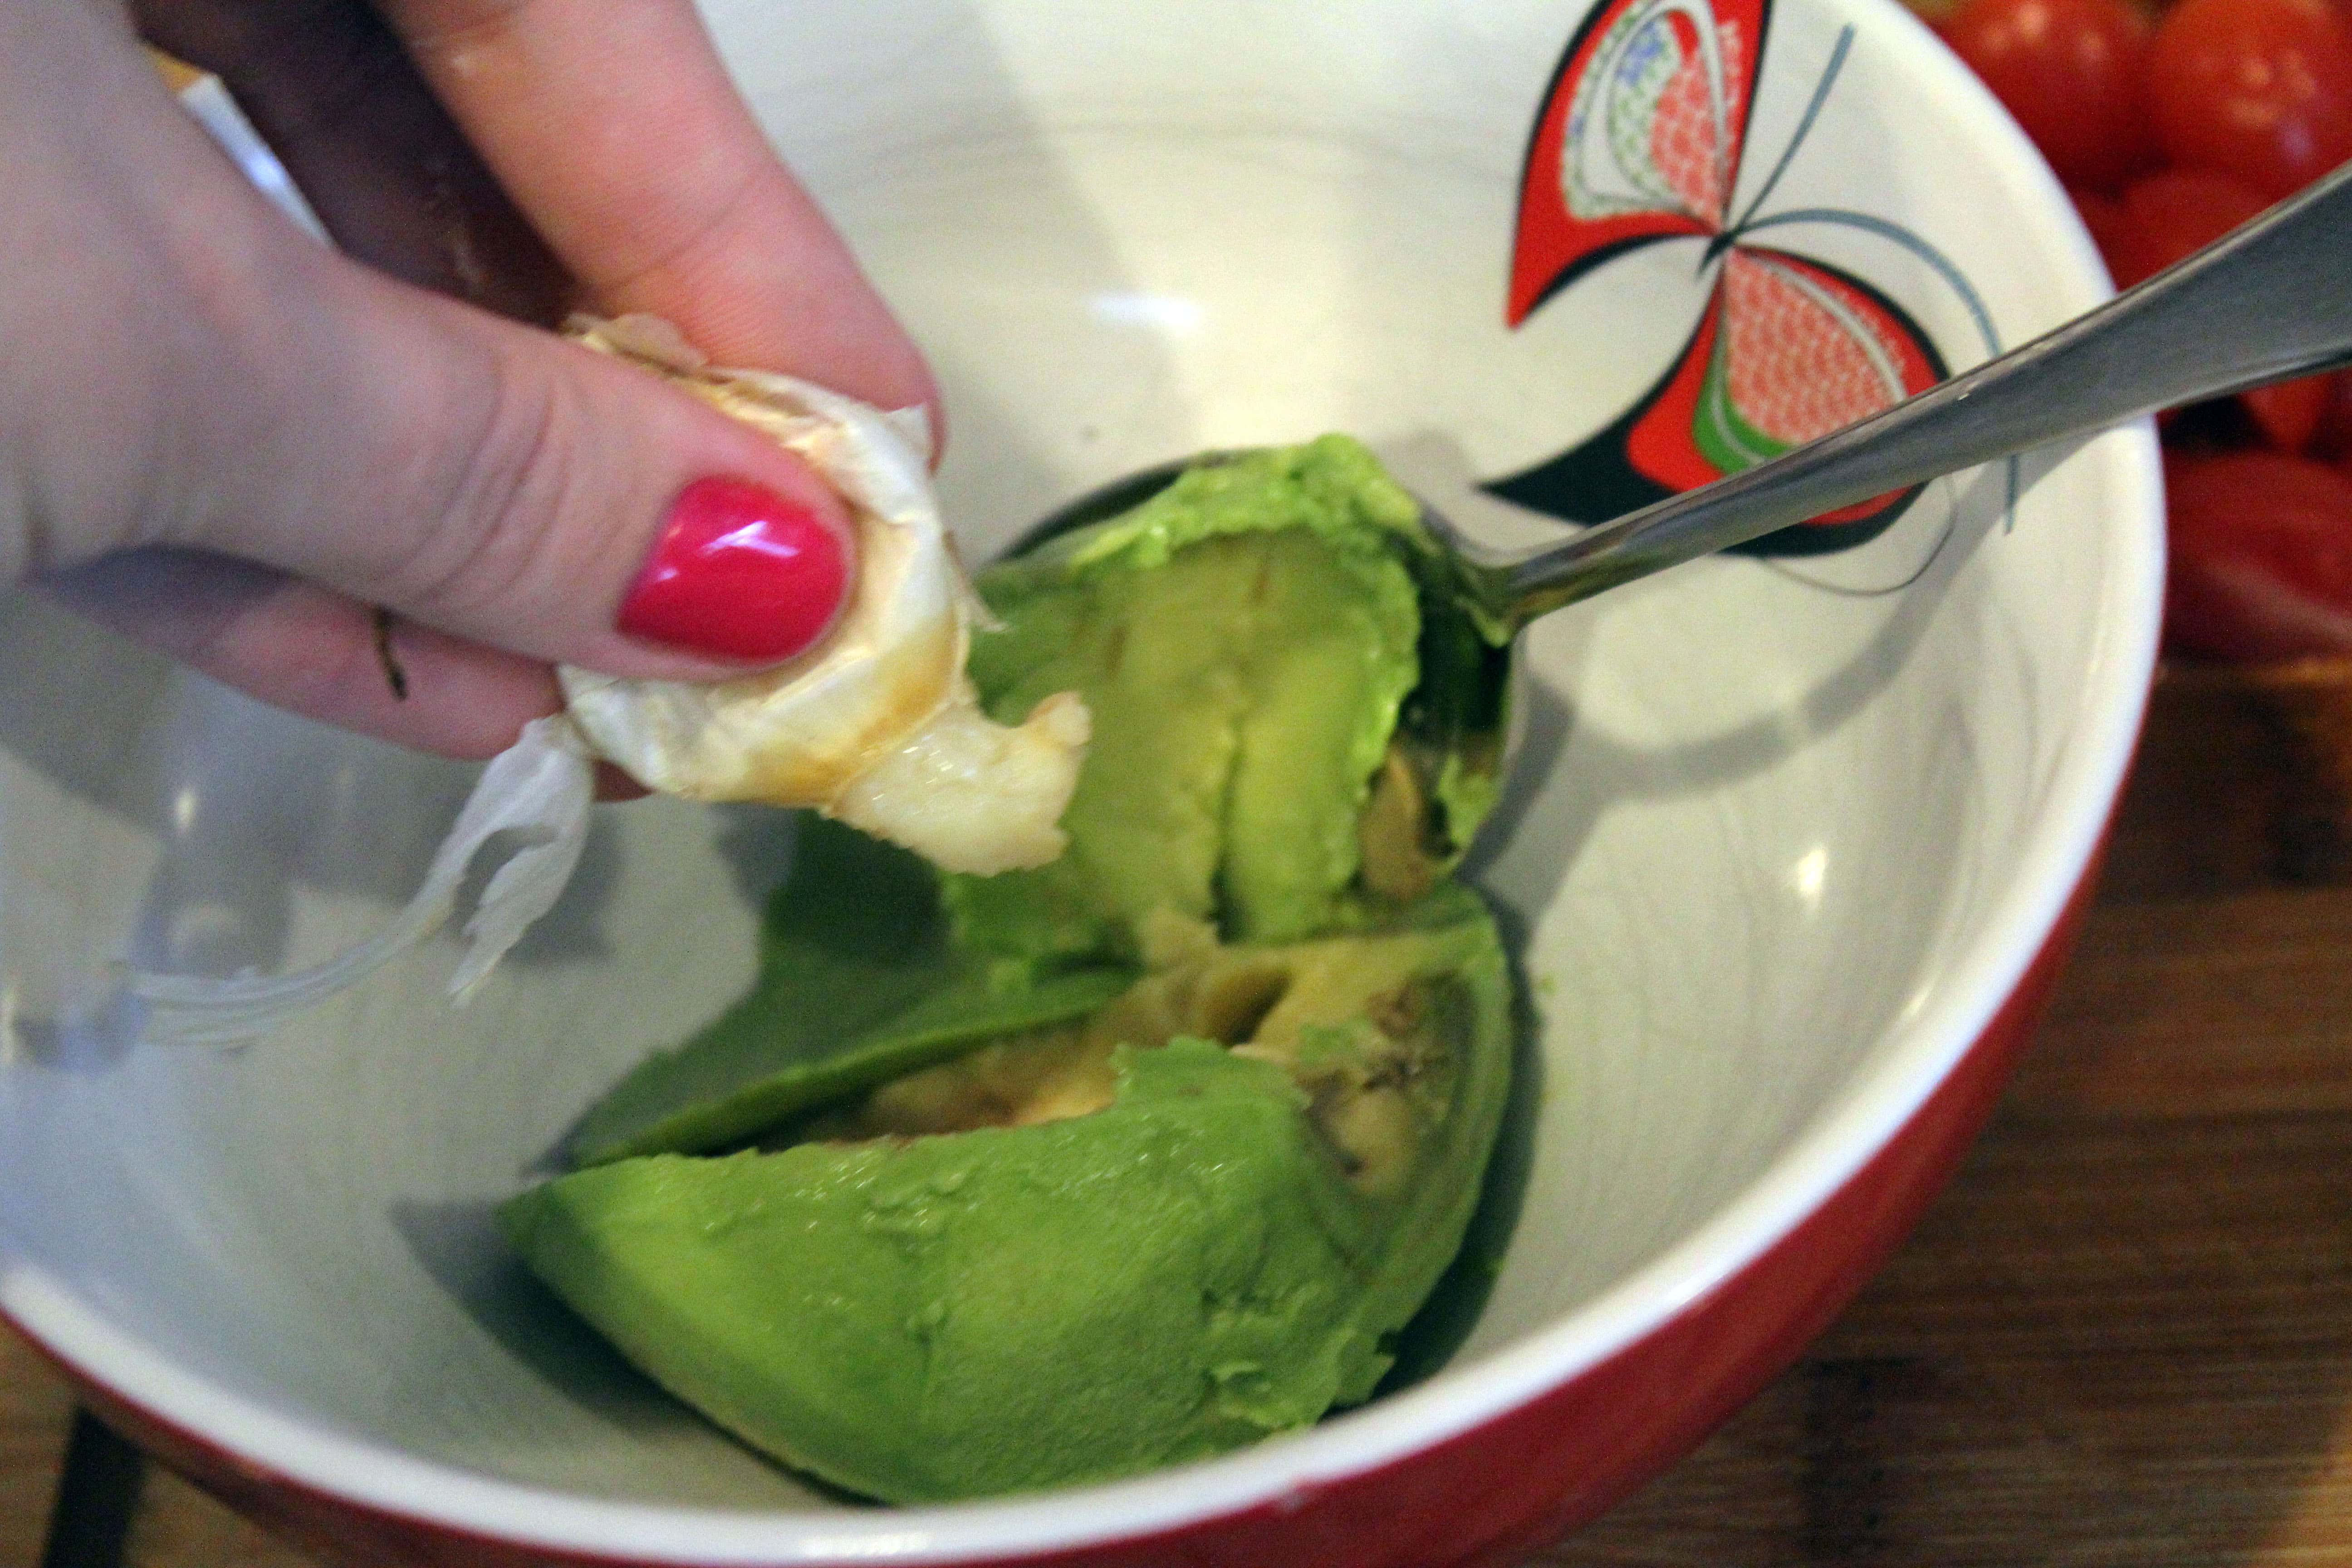 Squish garlic into avocado